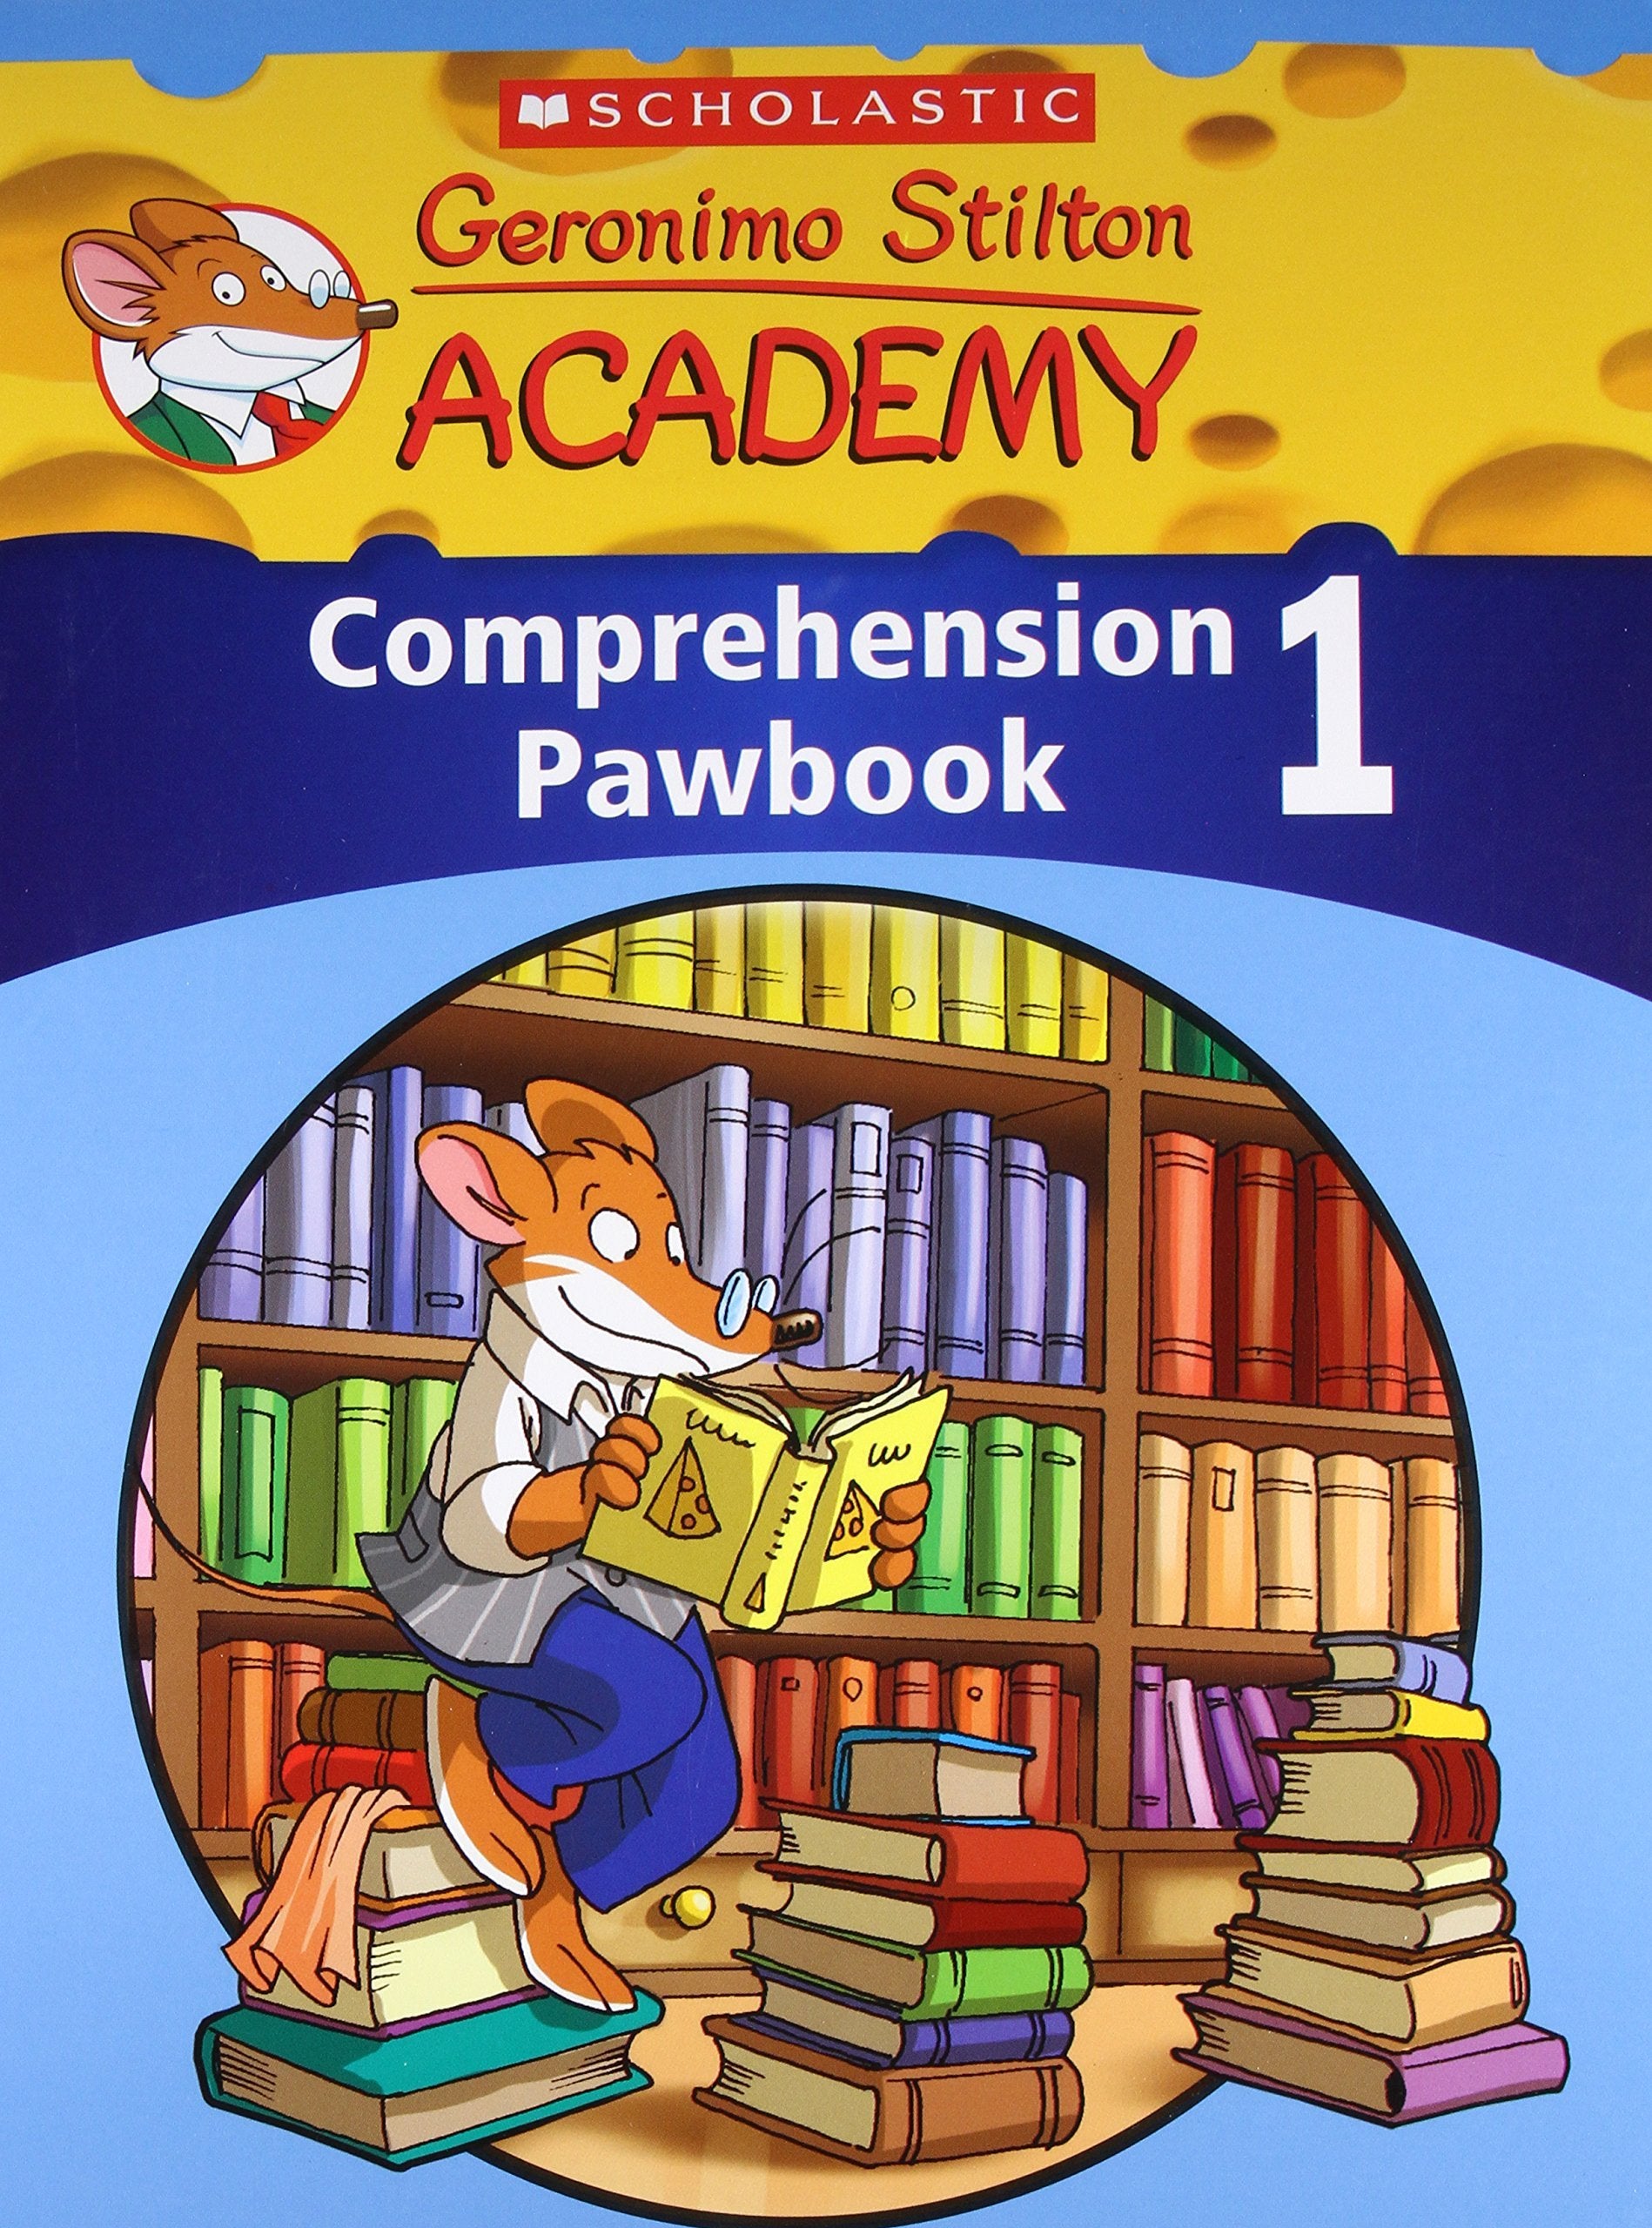 Geronimo Stilton Academy: Comprehension Paw Book 1